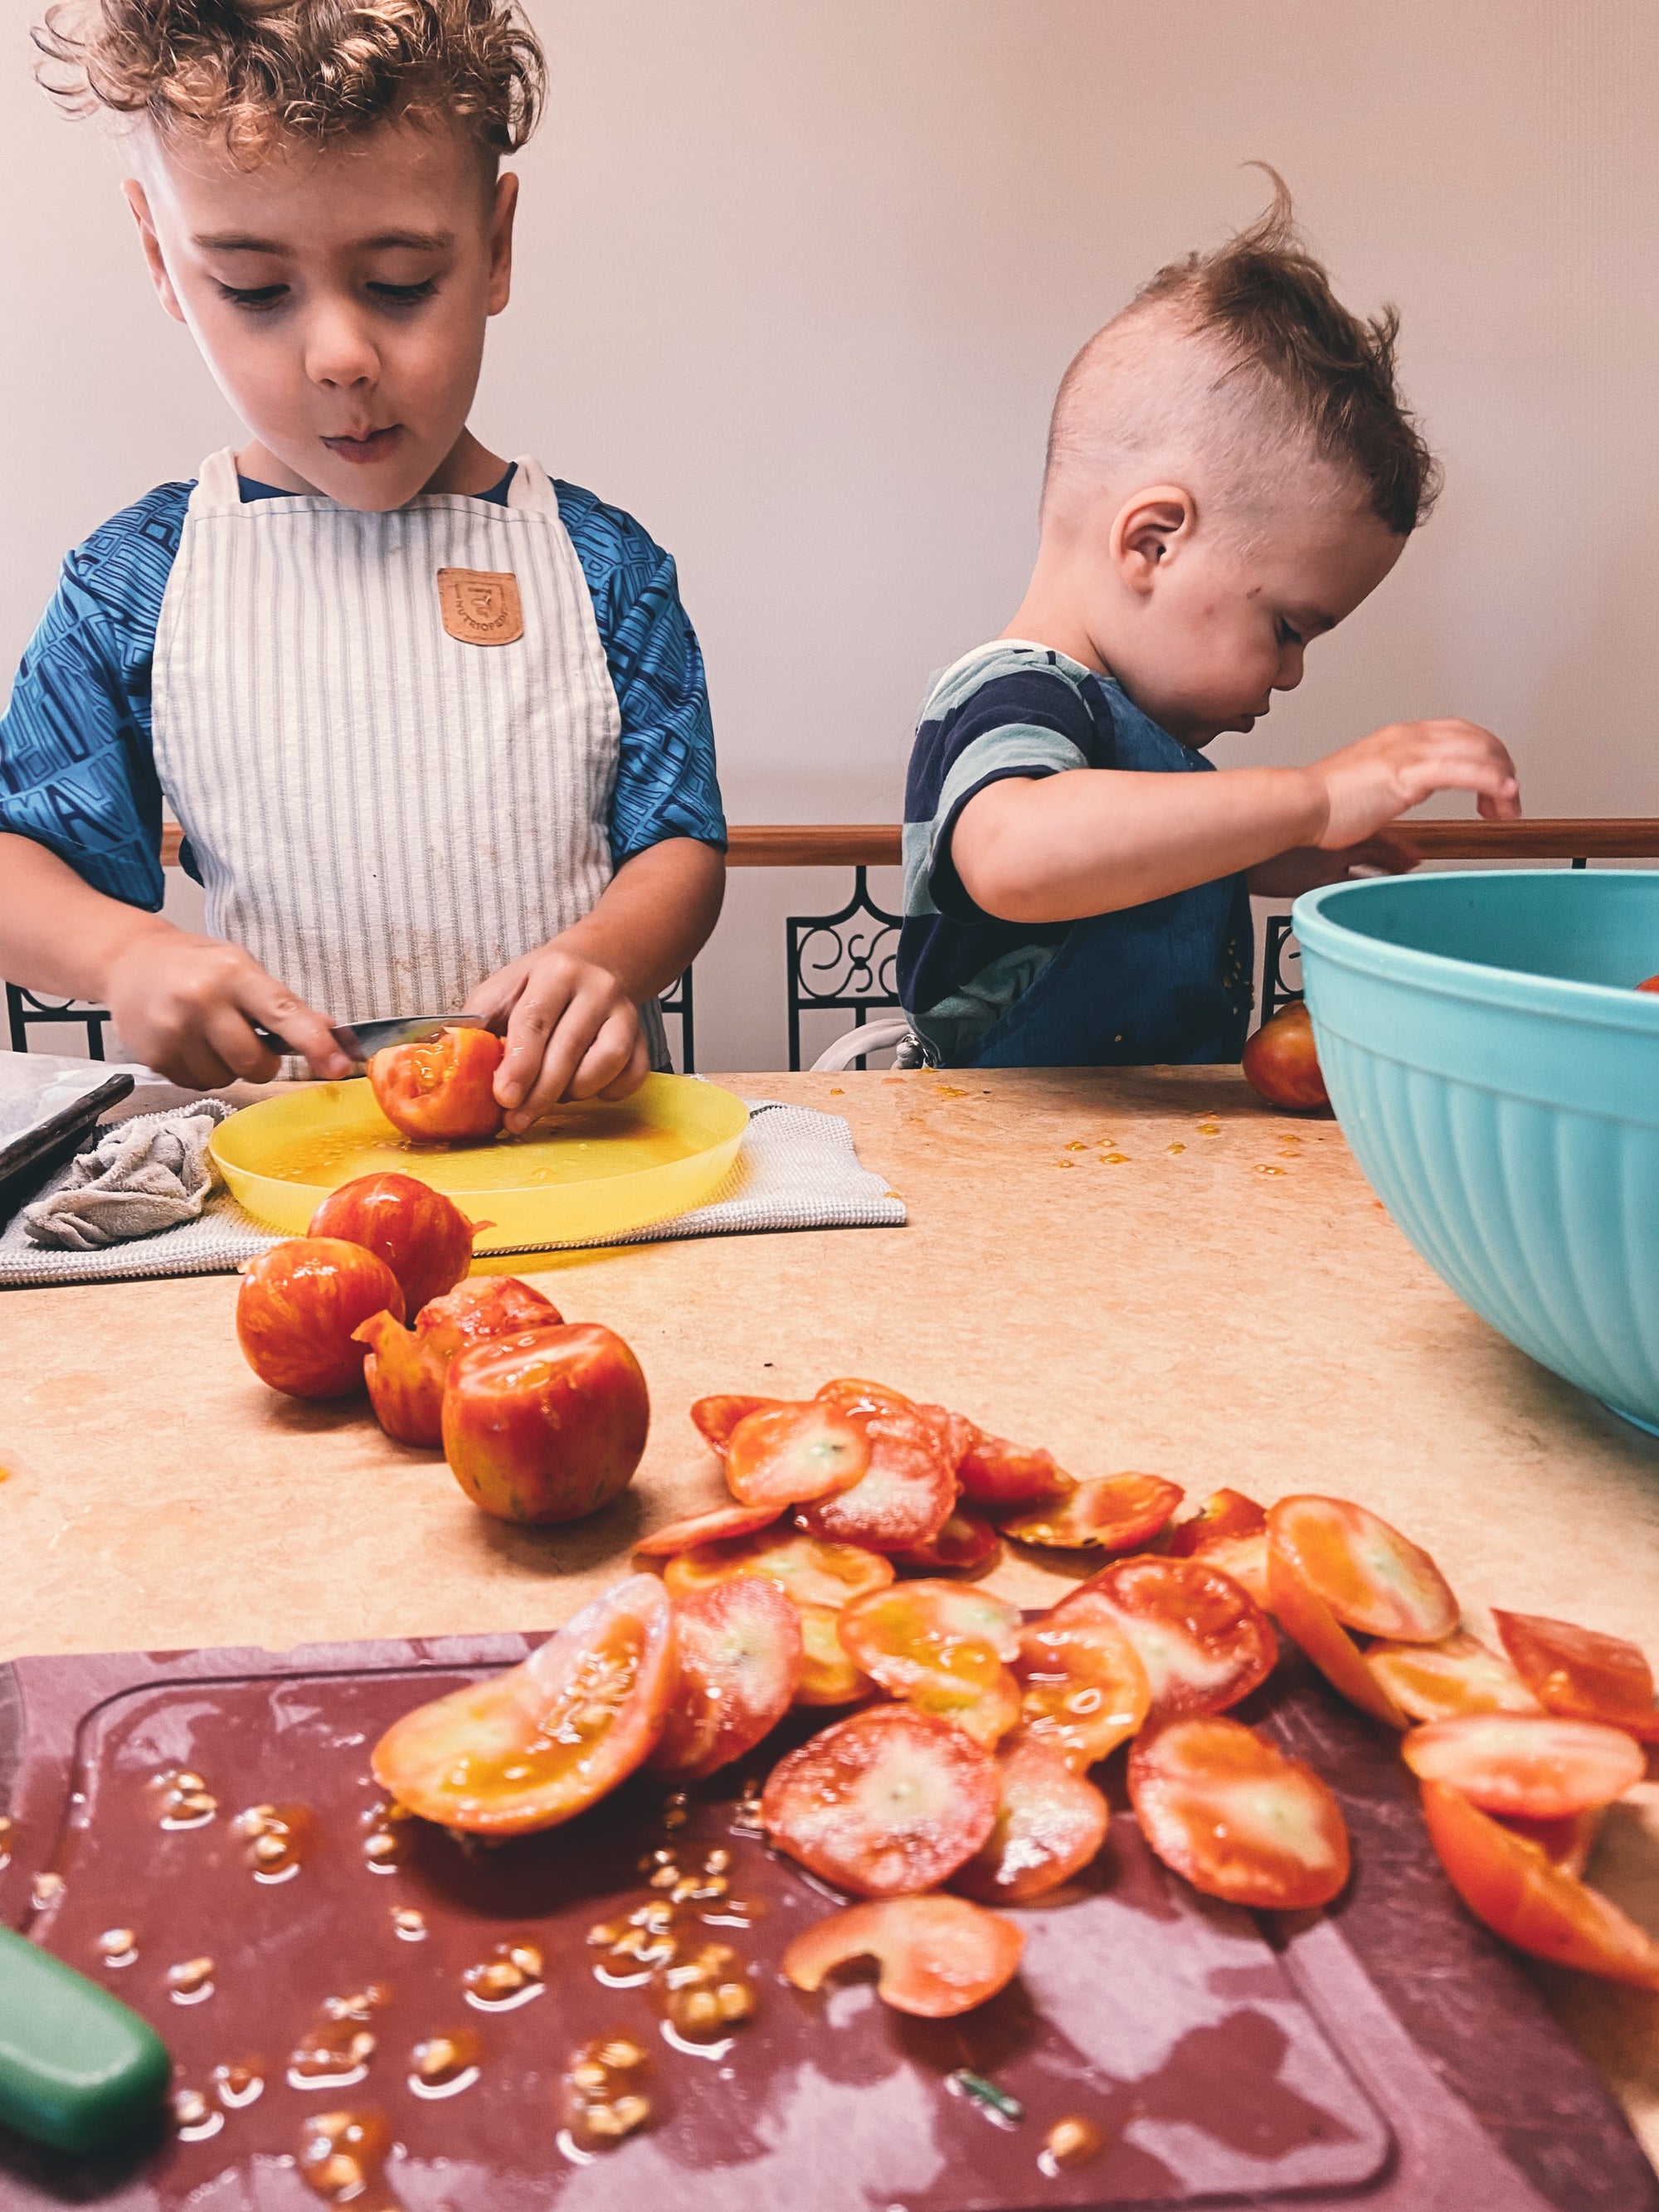 Les avantages de cuisiner avec nos enfants